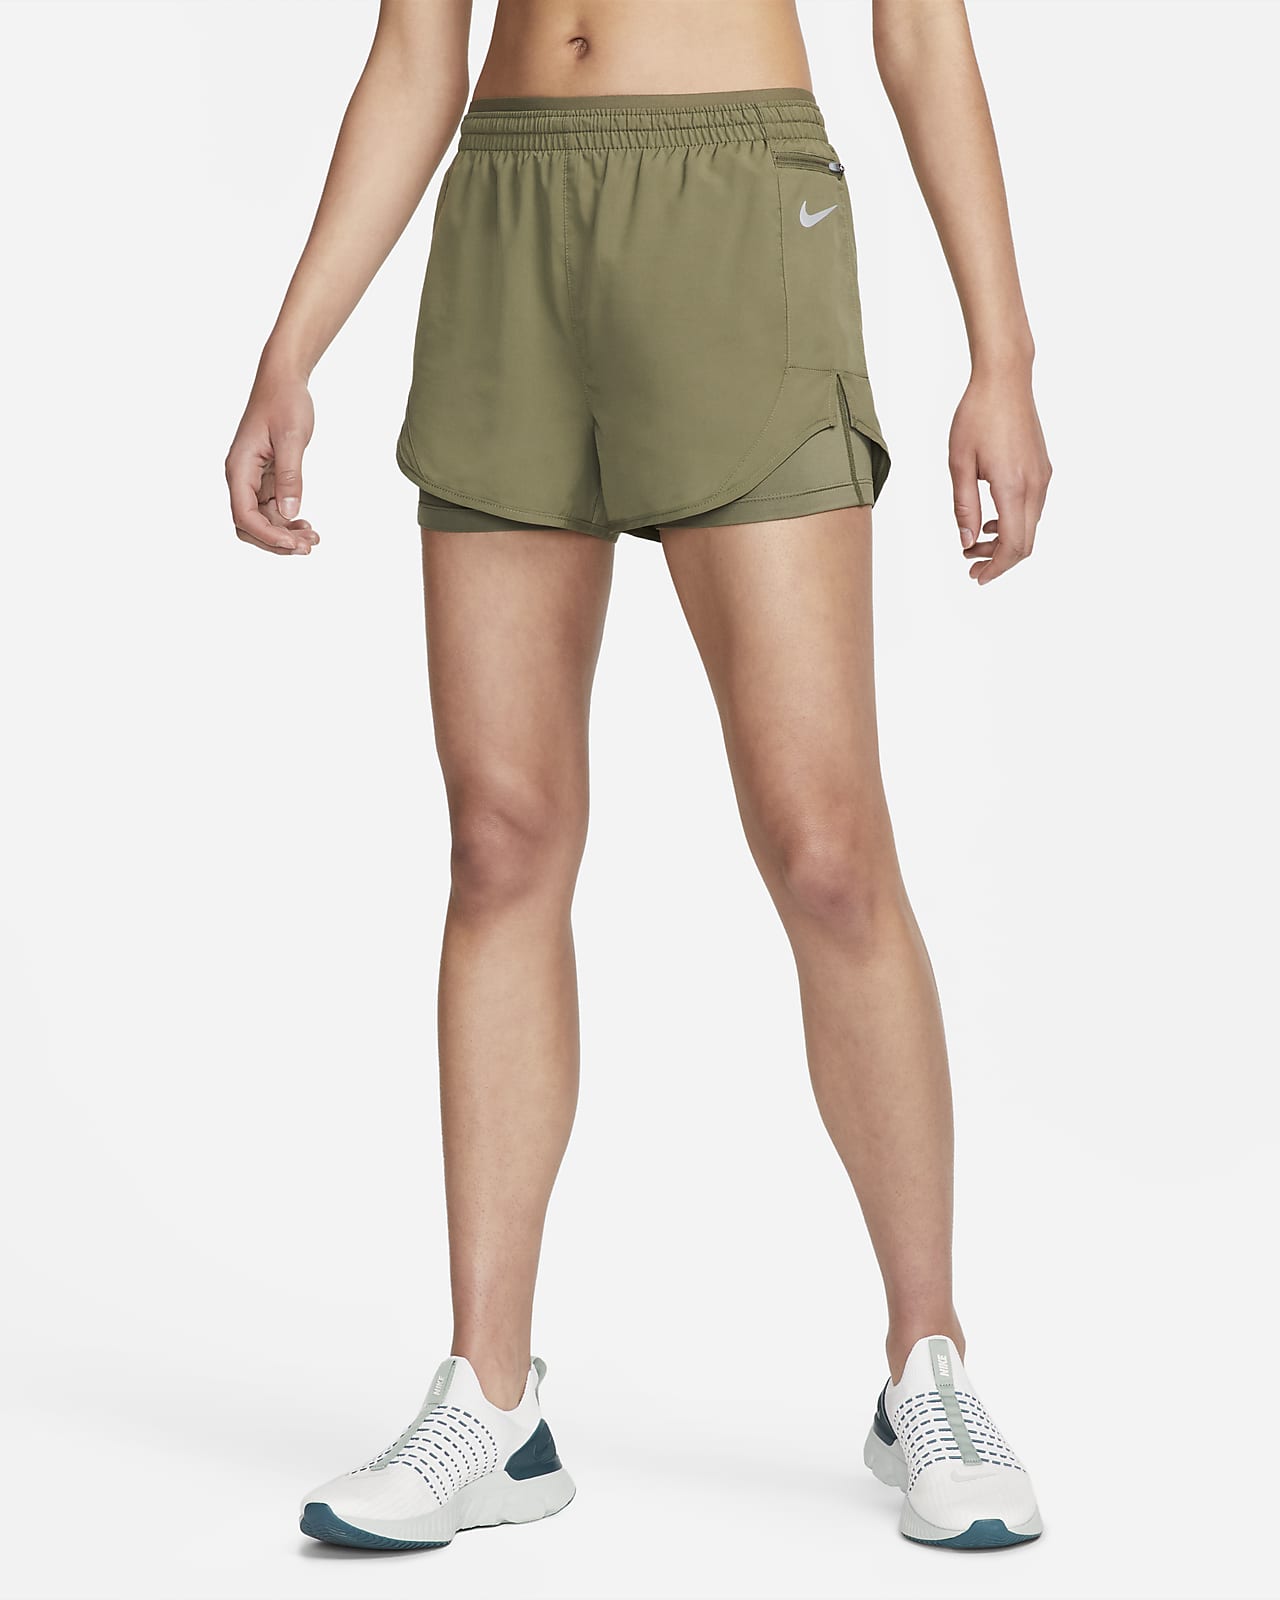 Shorts de running 2 en 1 para mujer Nike Tempo Luxe